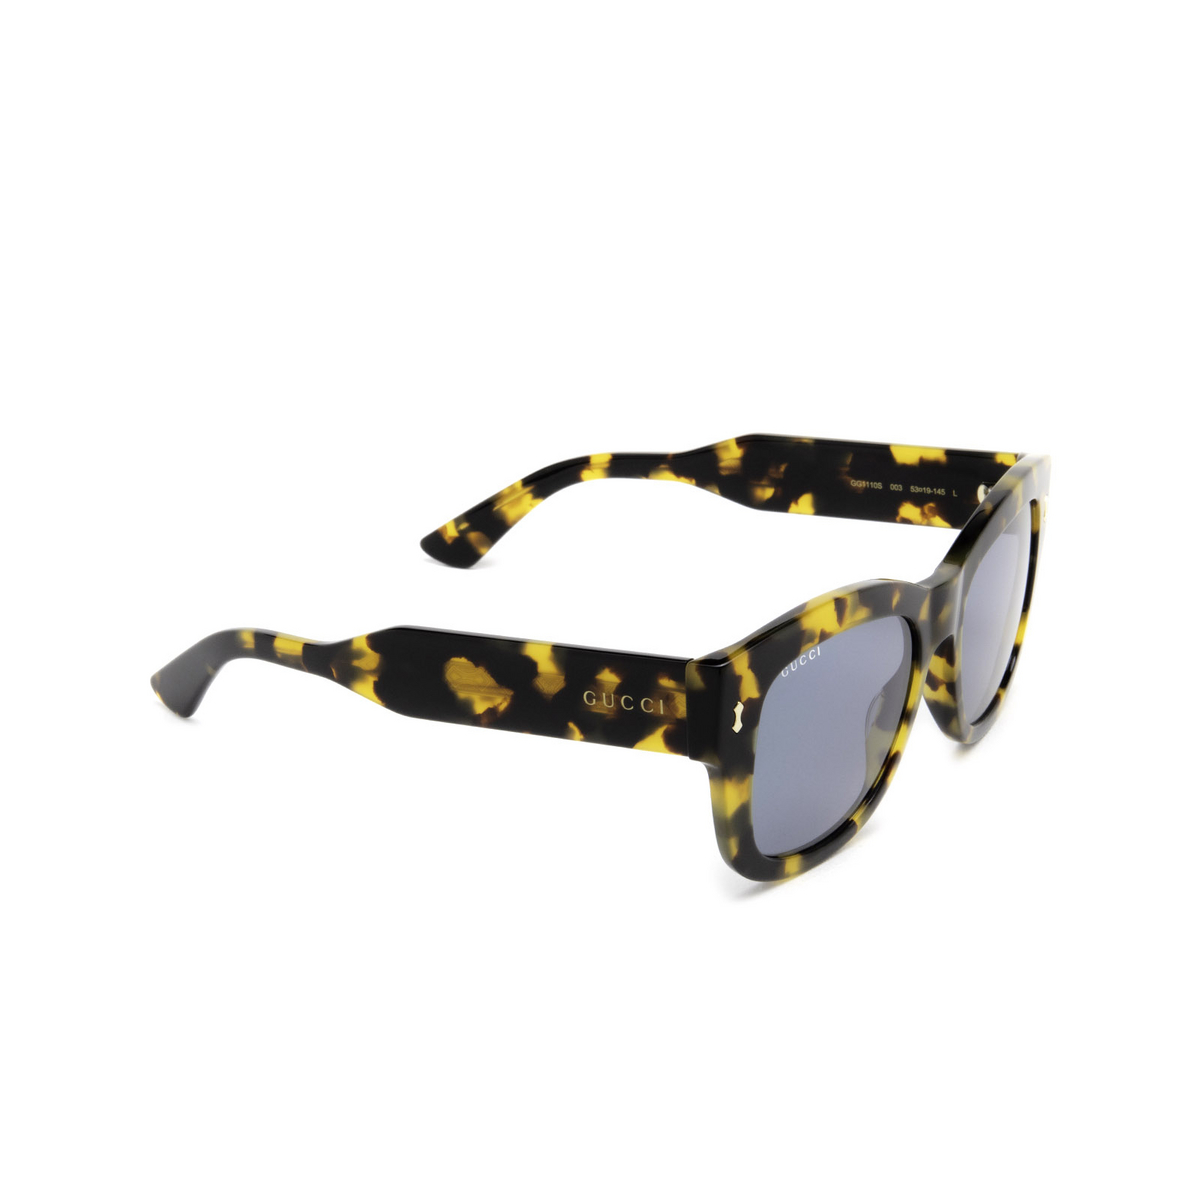 Gucci® Square Sunglasses: GG1110S color Havana 003 - three-quarters view.